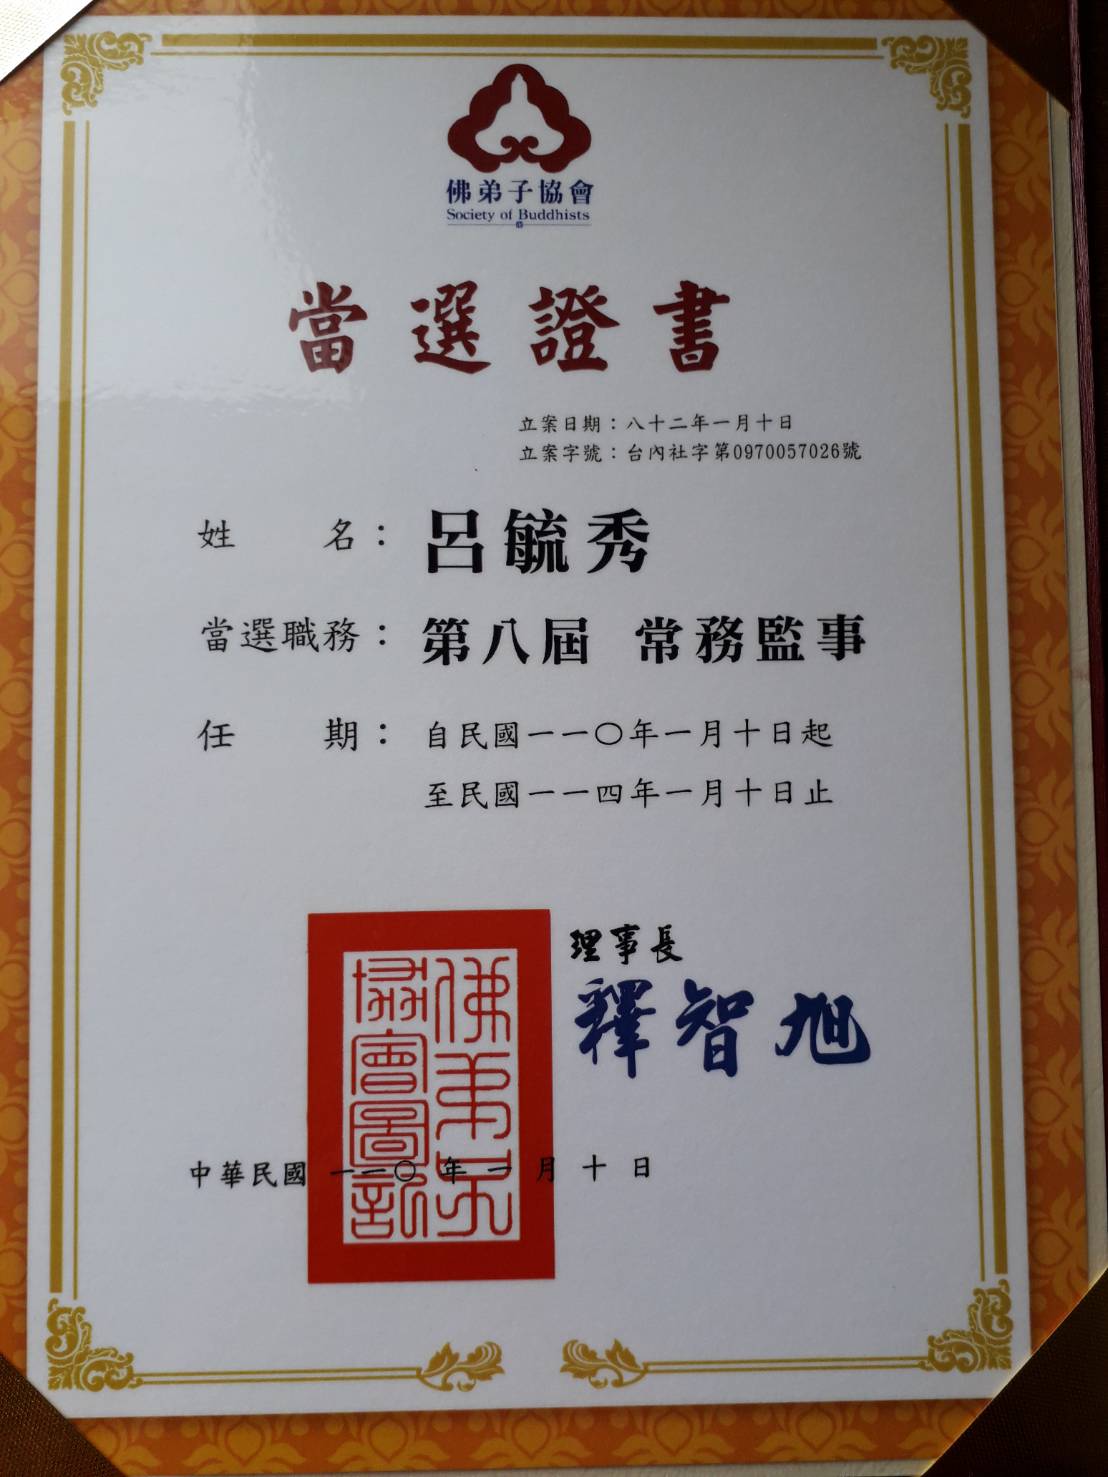 呂毓秀老師獲選為佛弟子協會第八屆常務監事